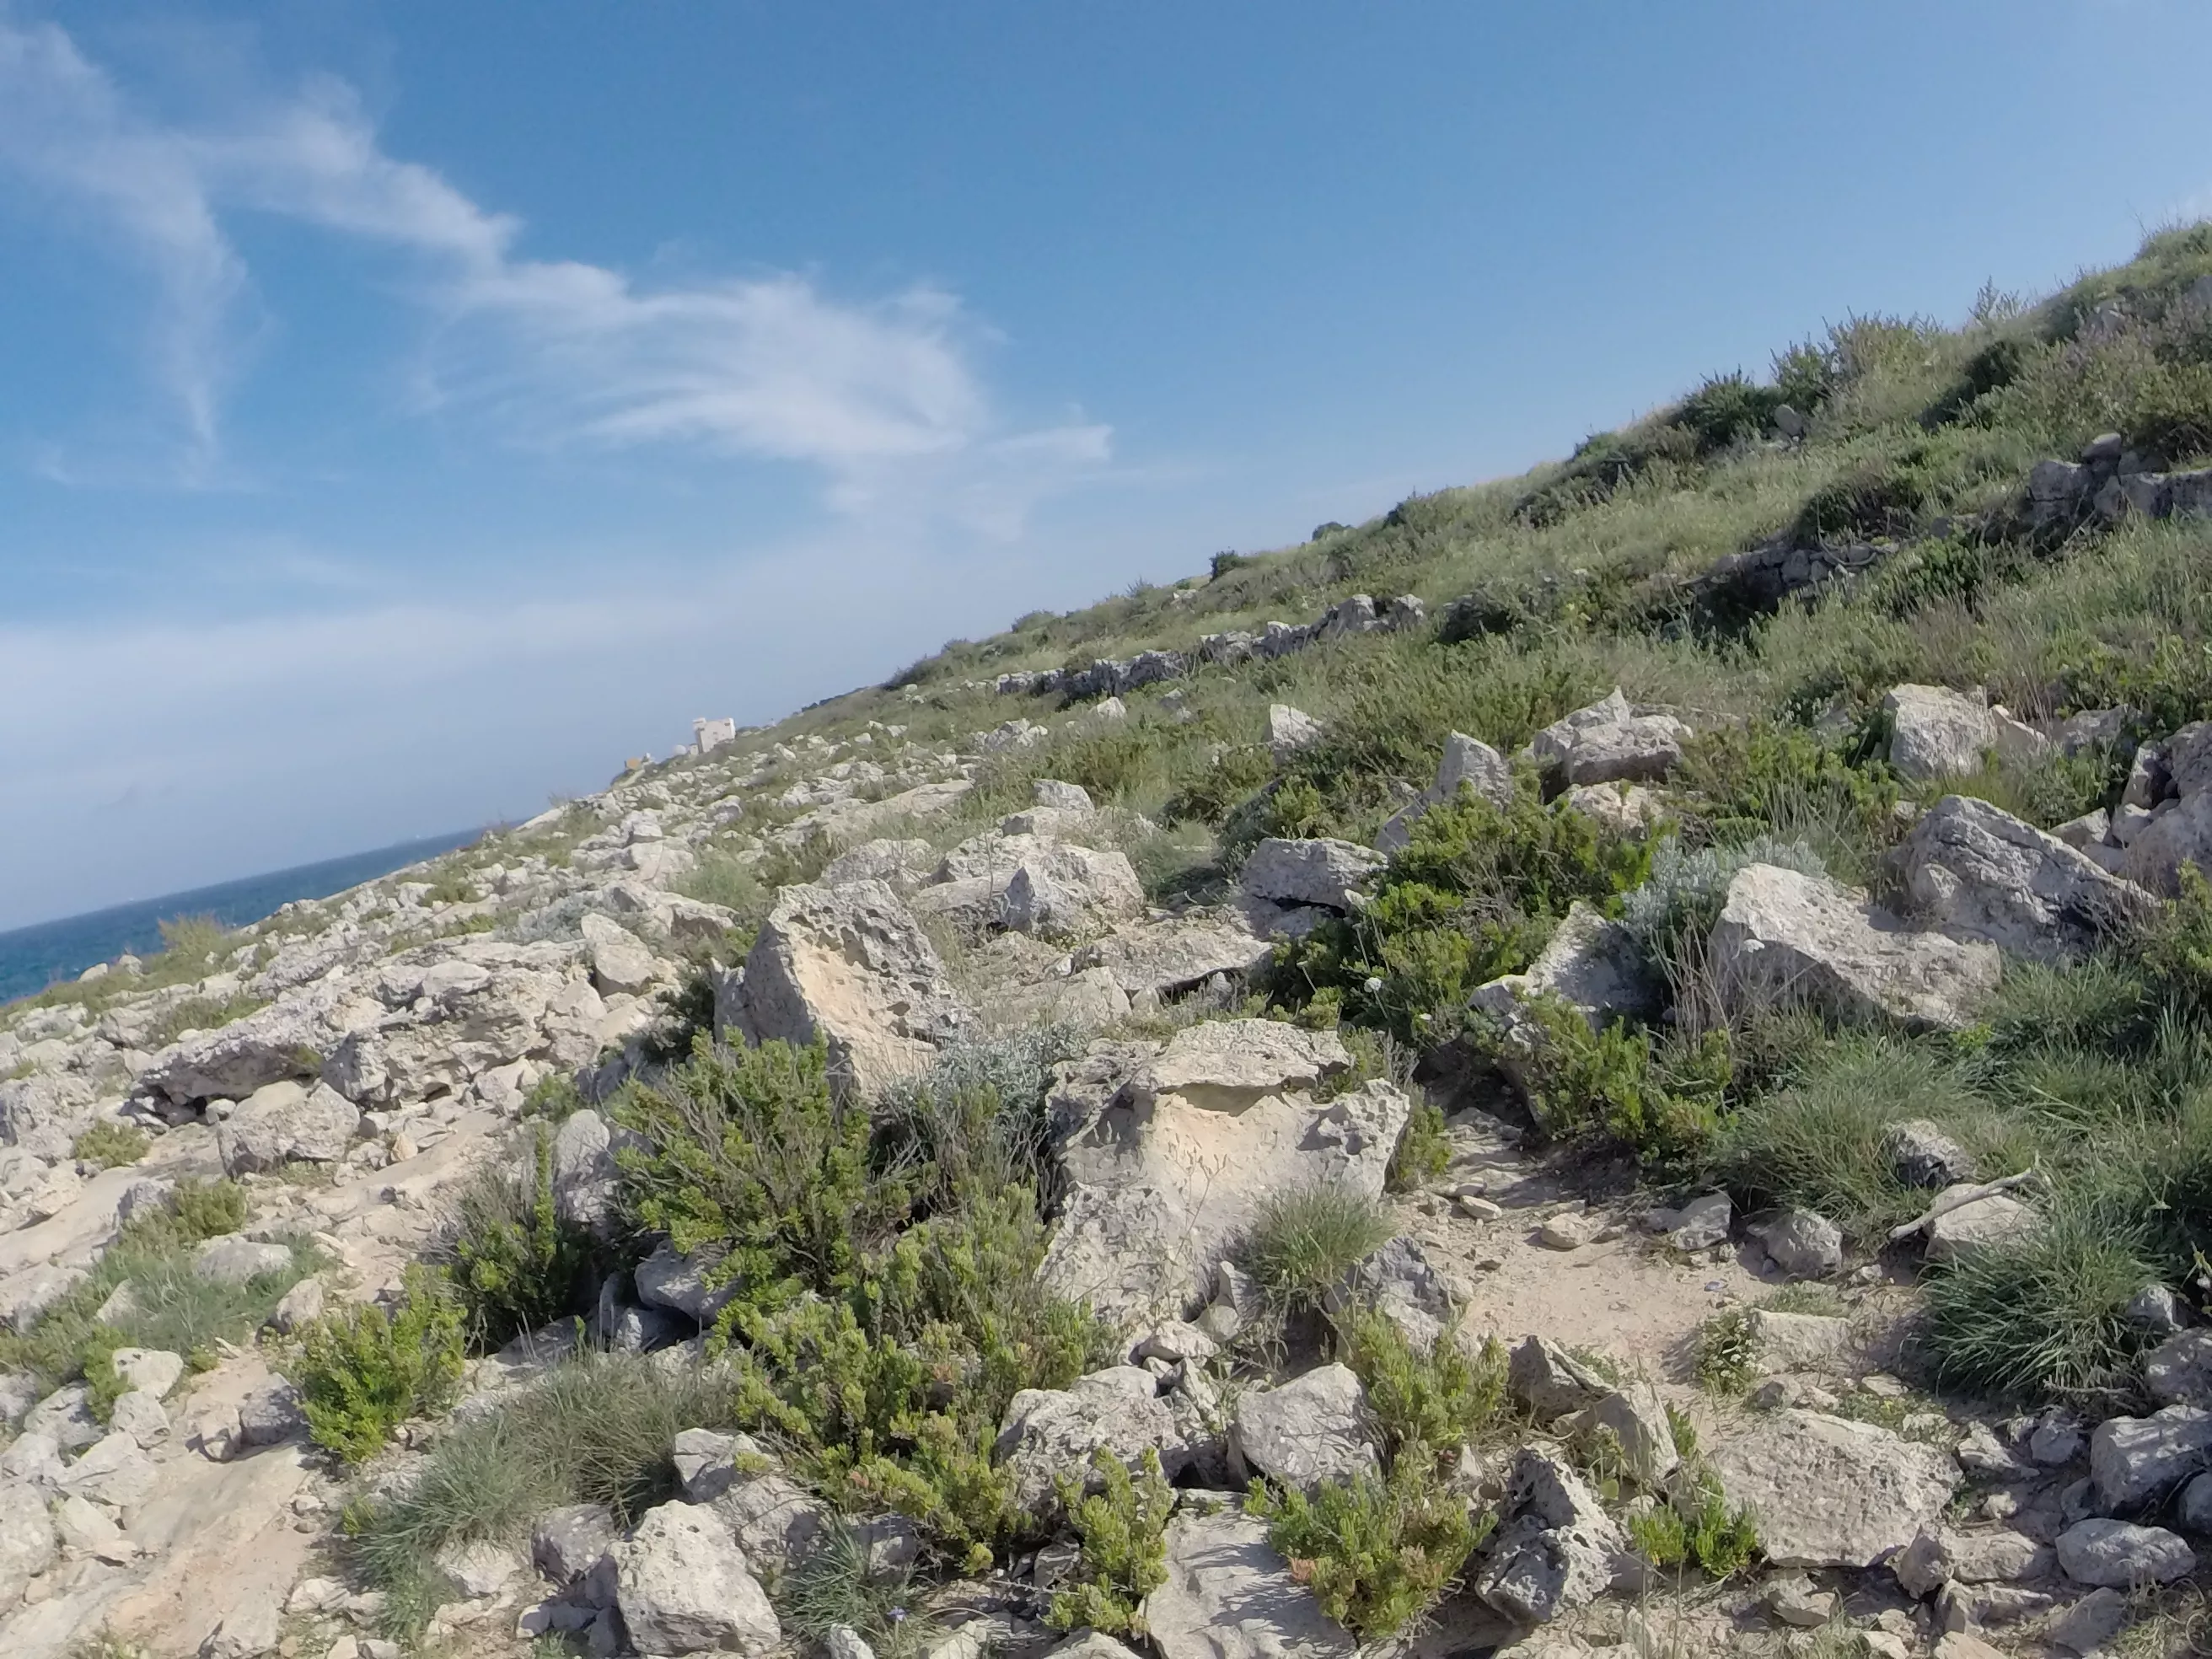 Park Nazzjonali Il Majjistral in Malta, Europe | Trekking & Hiking - Rated 0.8